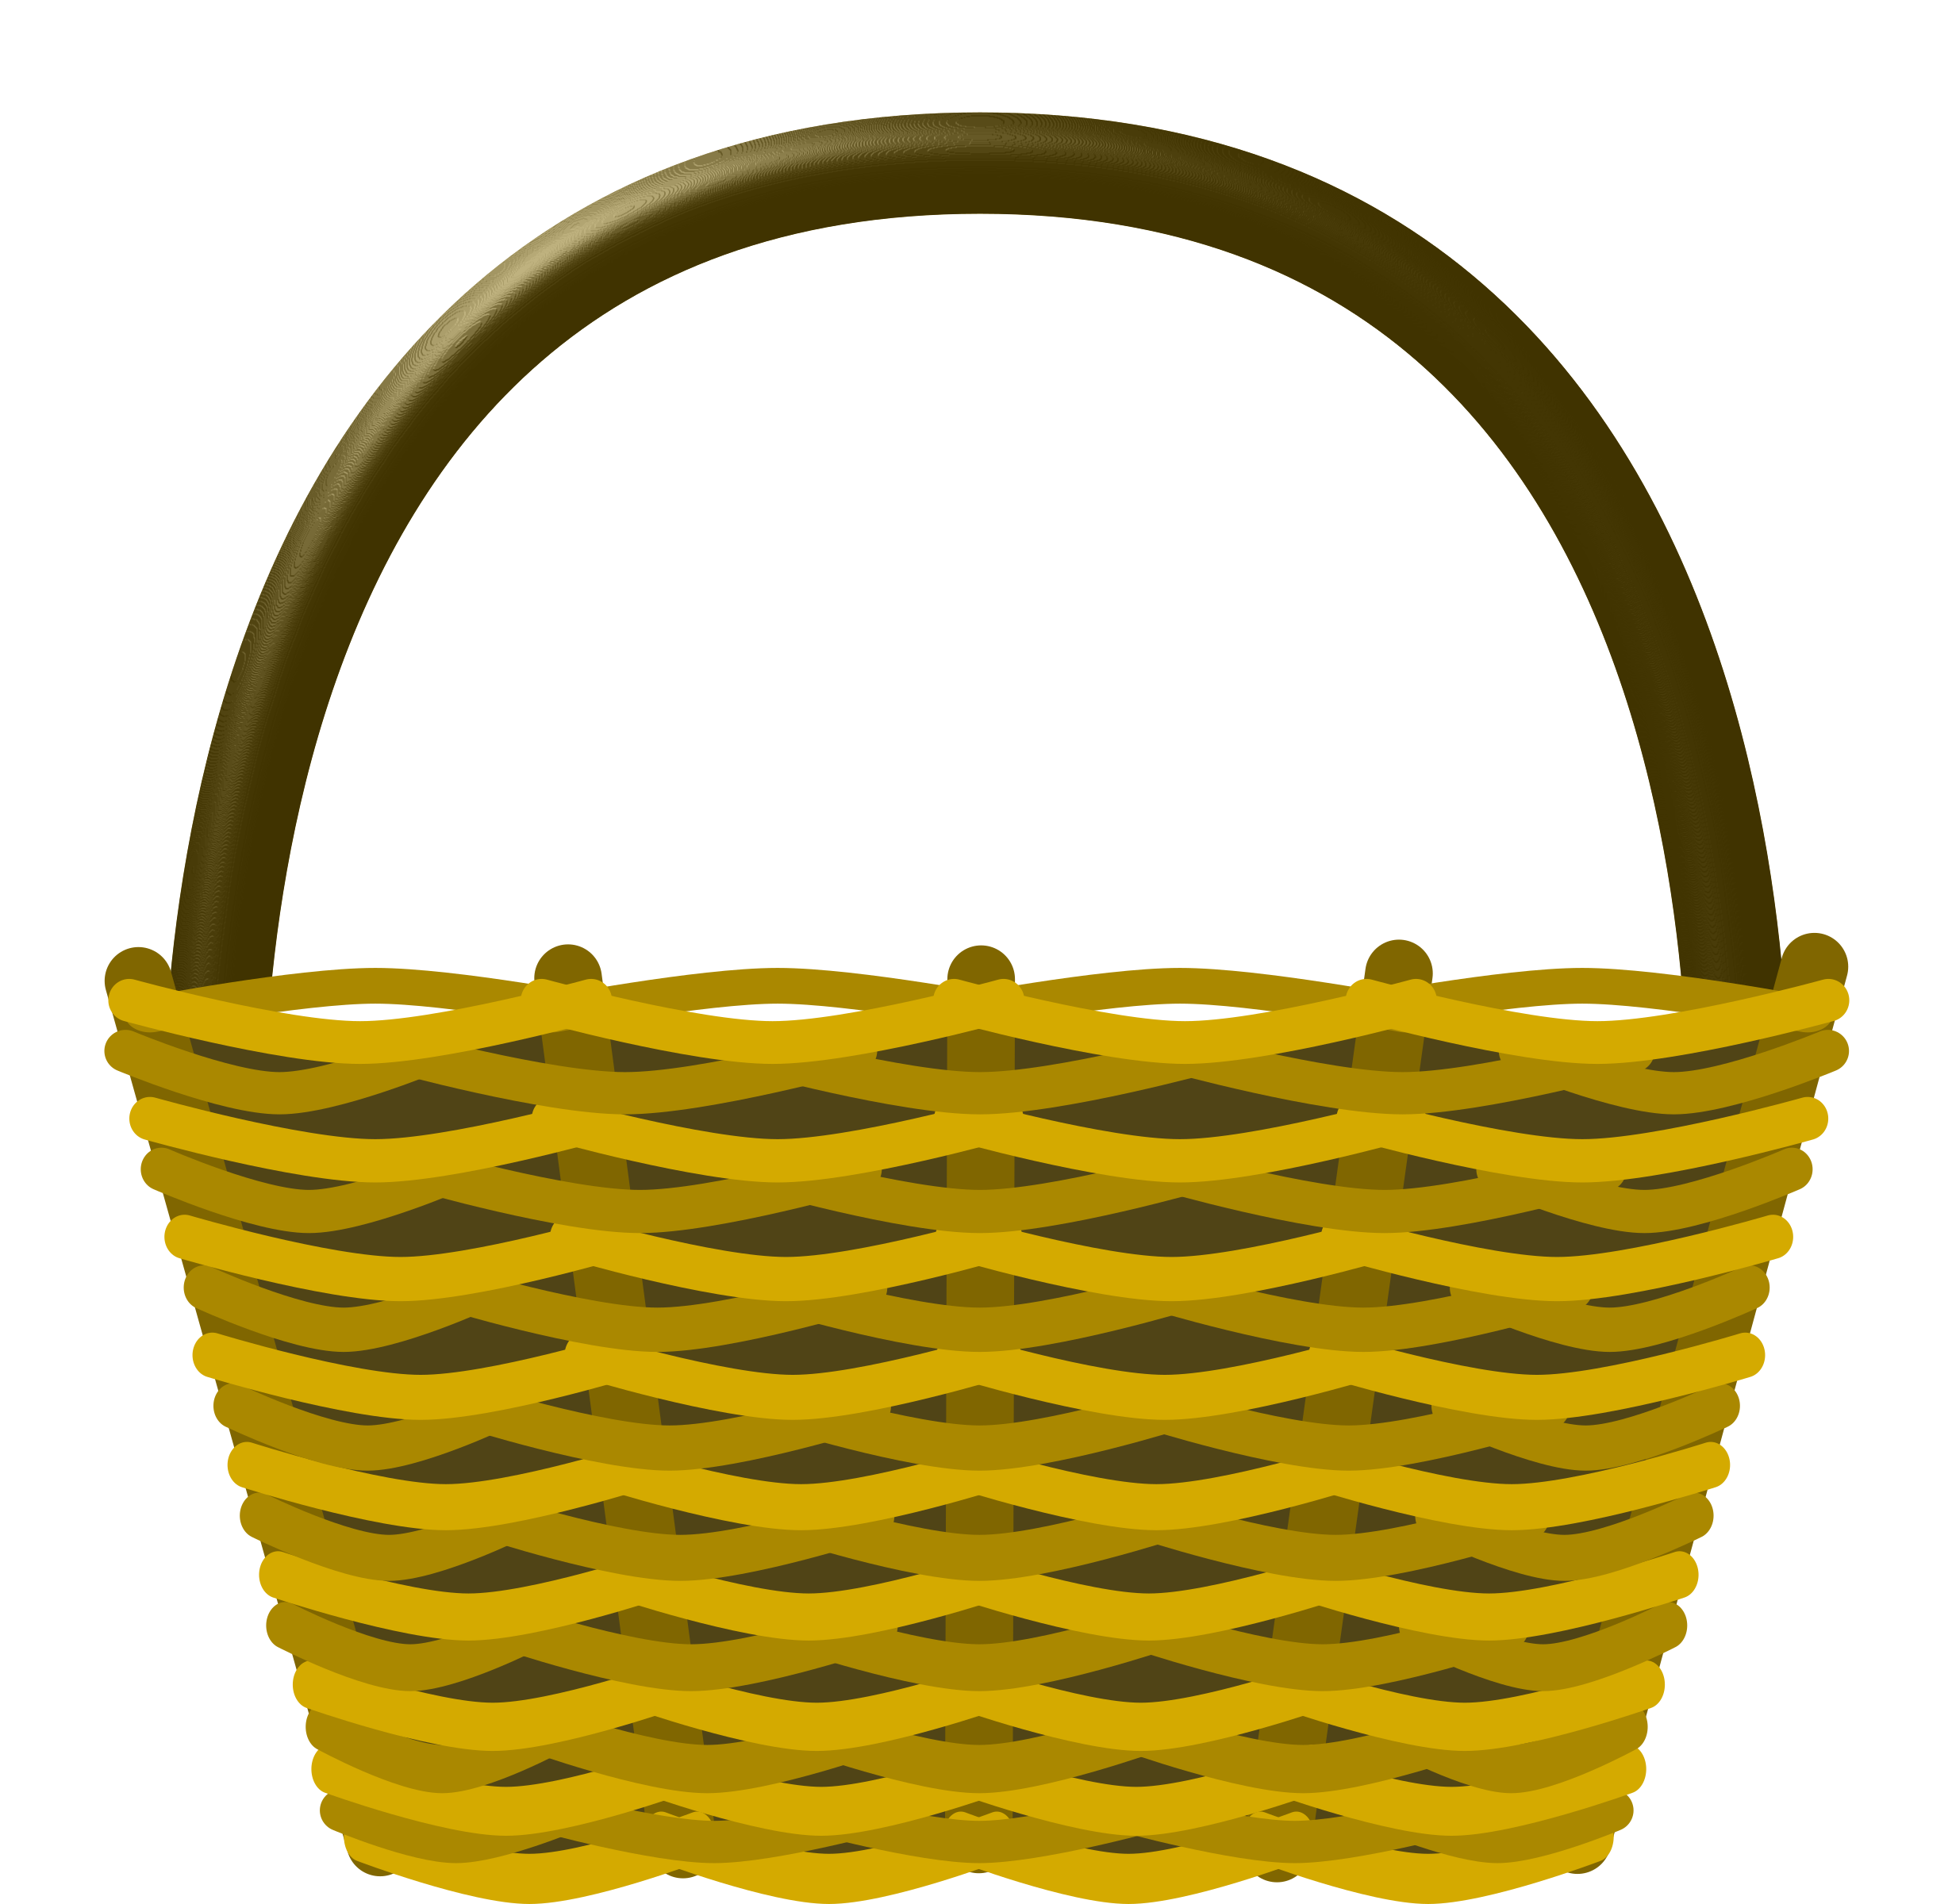 Bushel Basket Clipart Etc